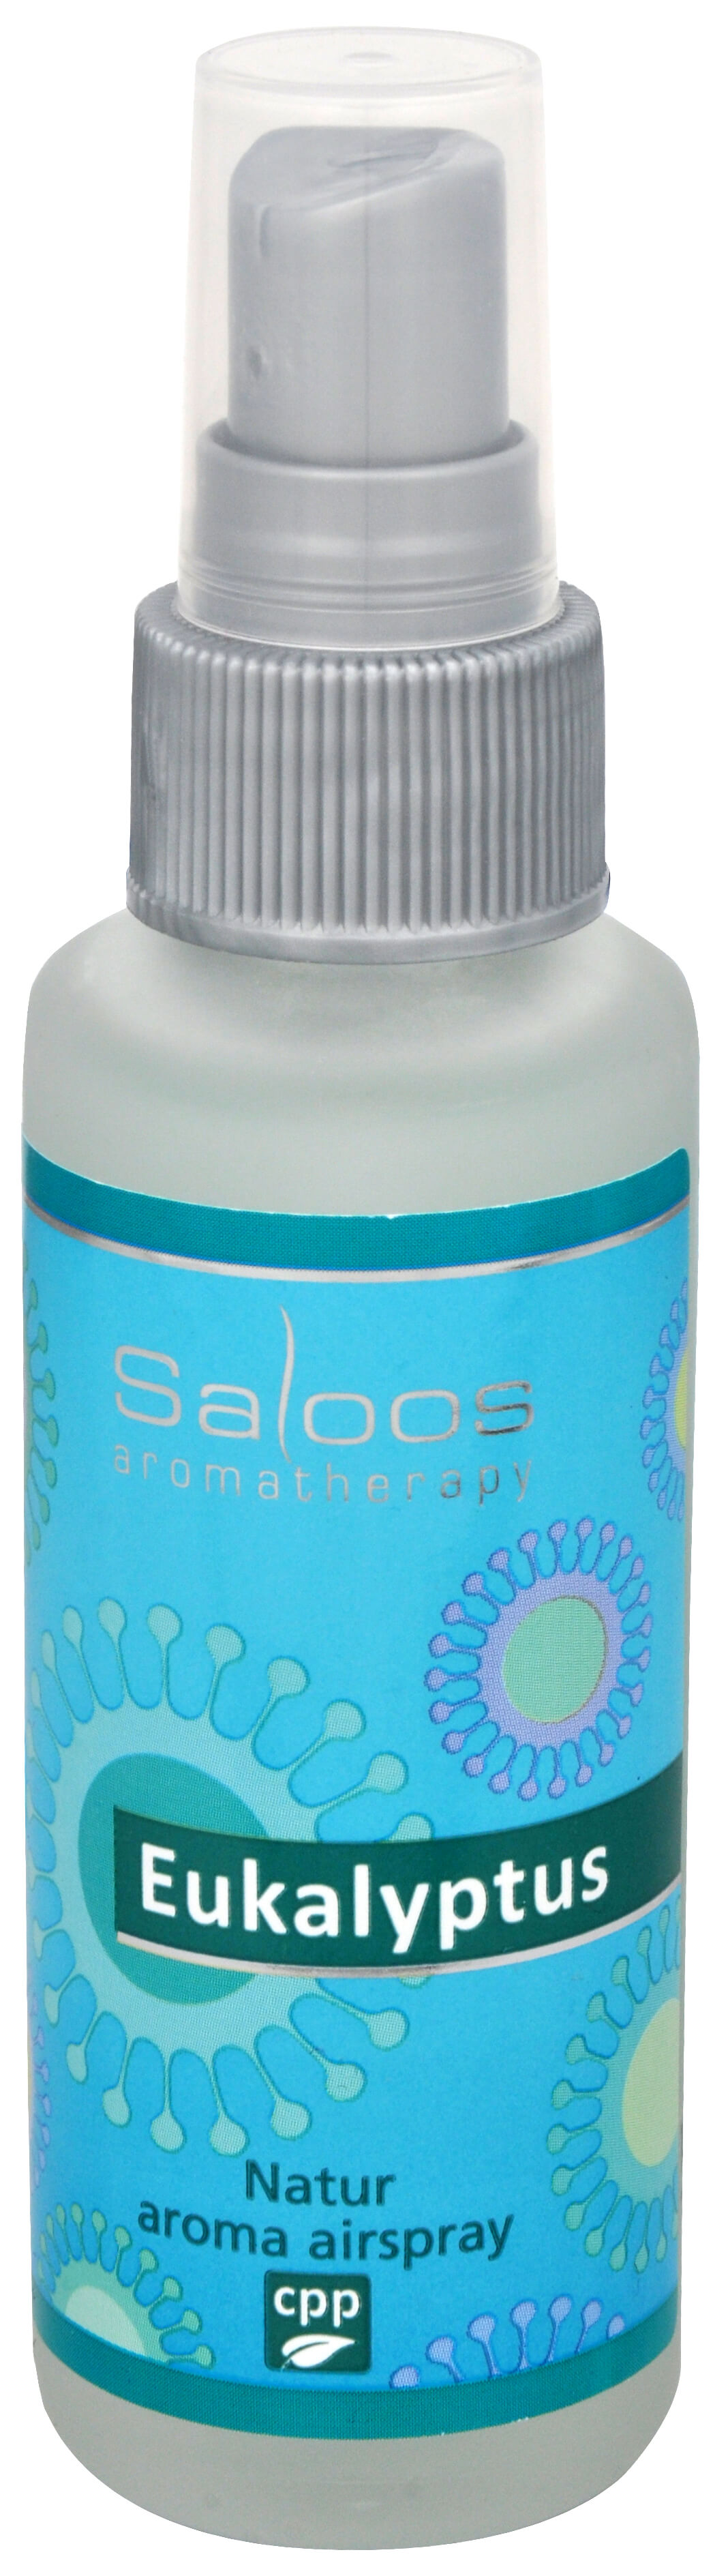 Zobrazit detail výrobku Saloos Natur aroma airspray - Eukalyptus (přírodní osvěžovač vzduchu) 50 ml